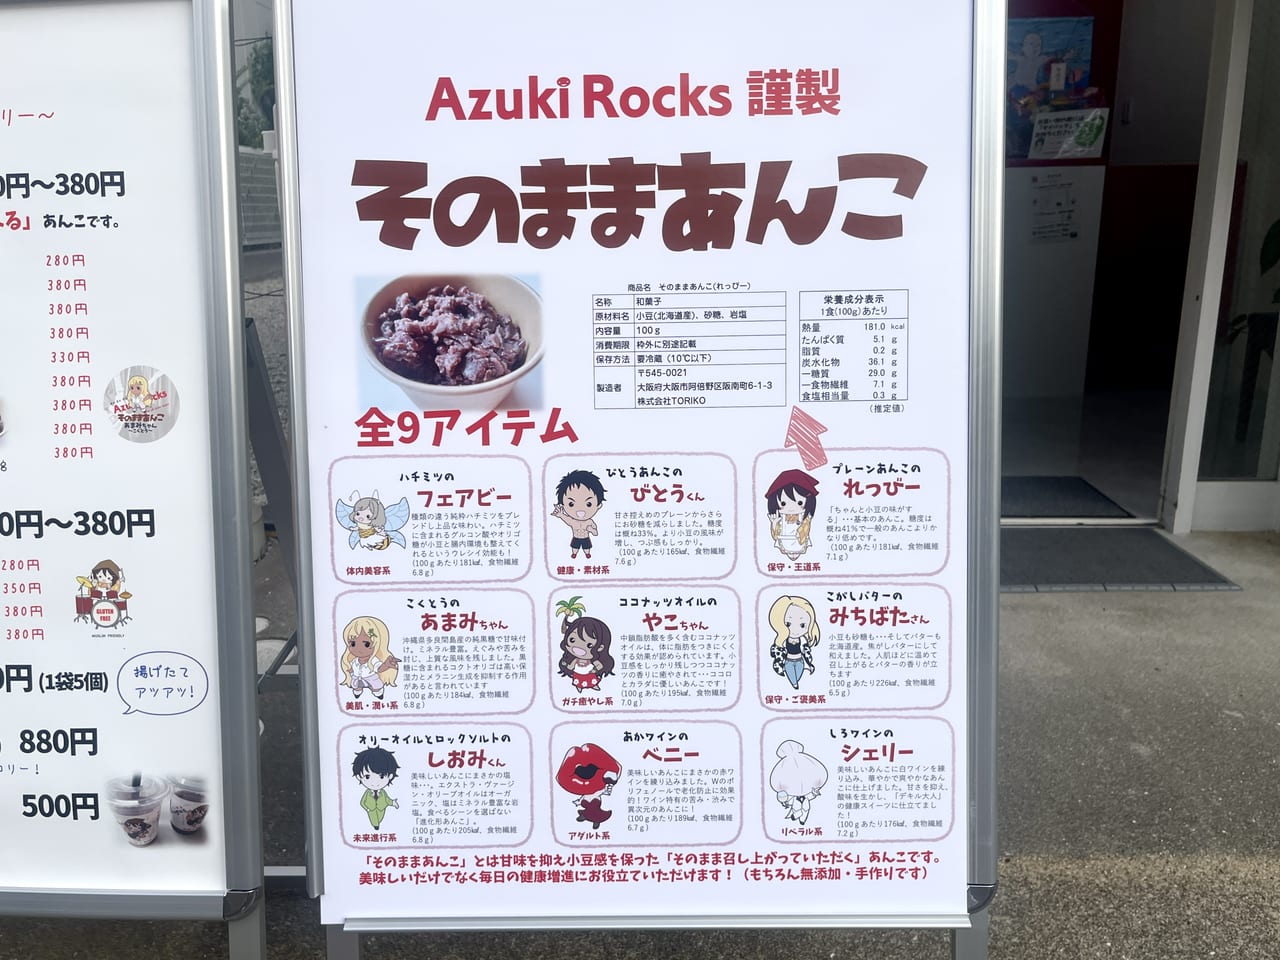 あんこ屋 Azuki Rocks